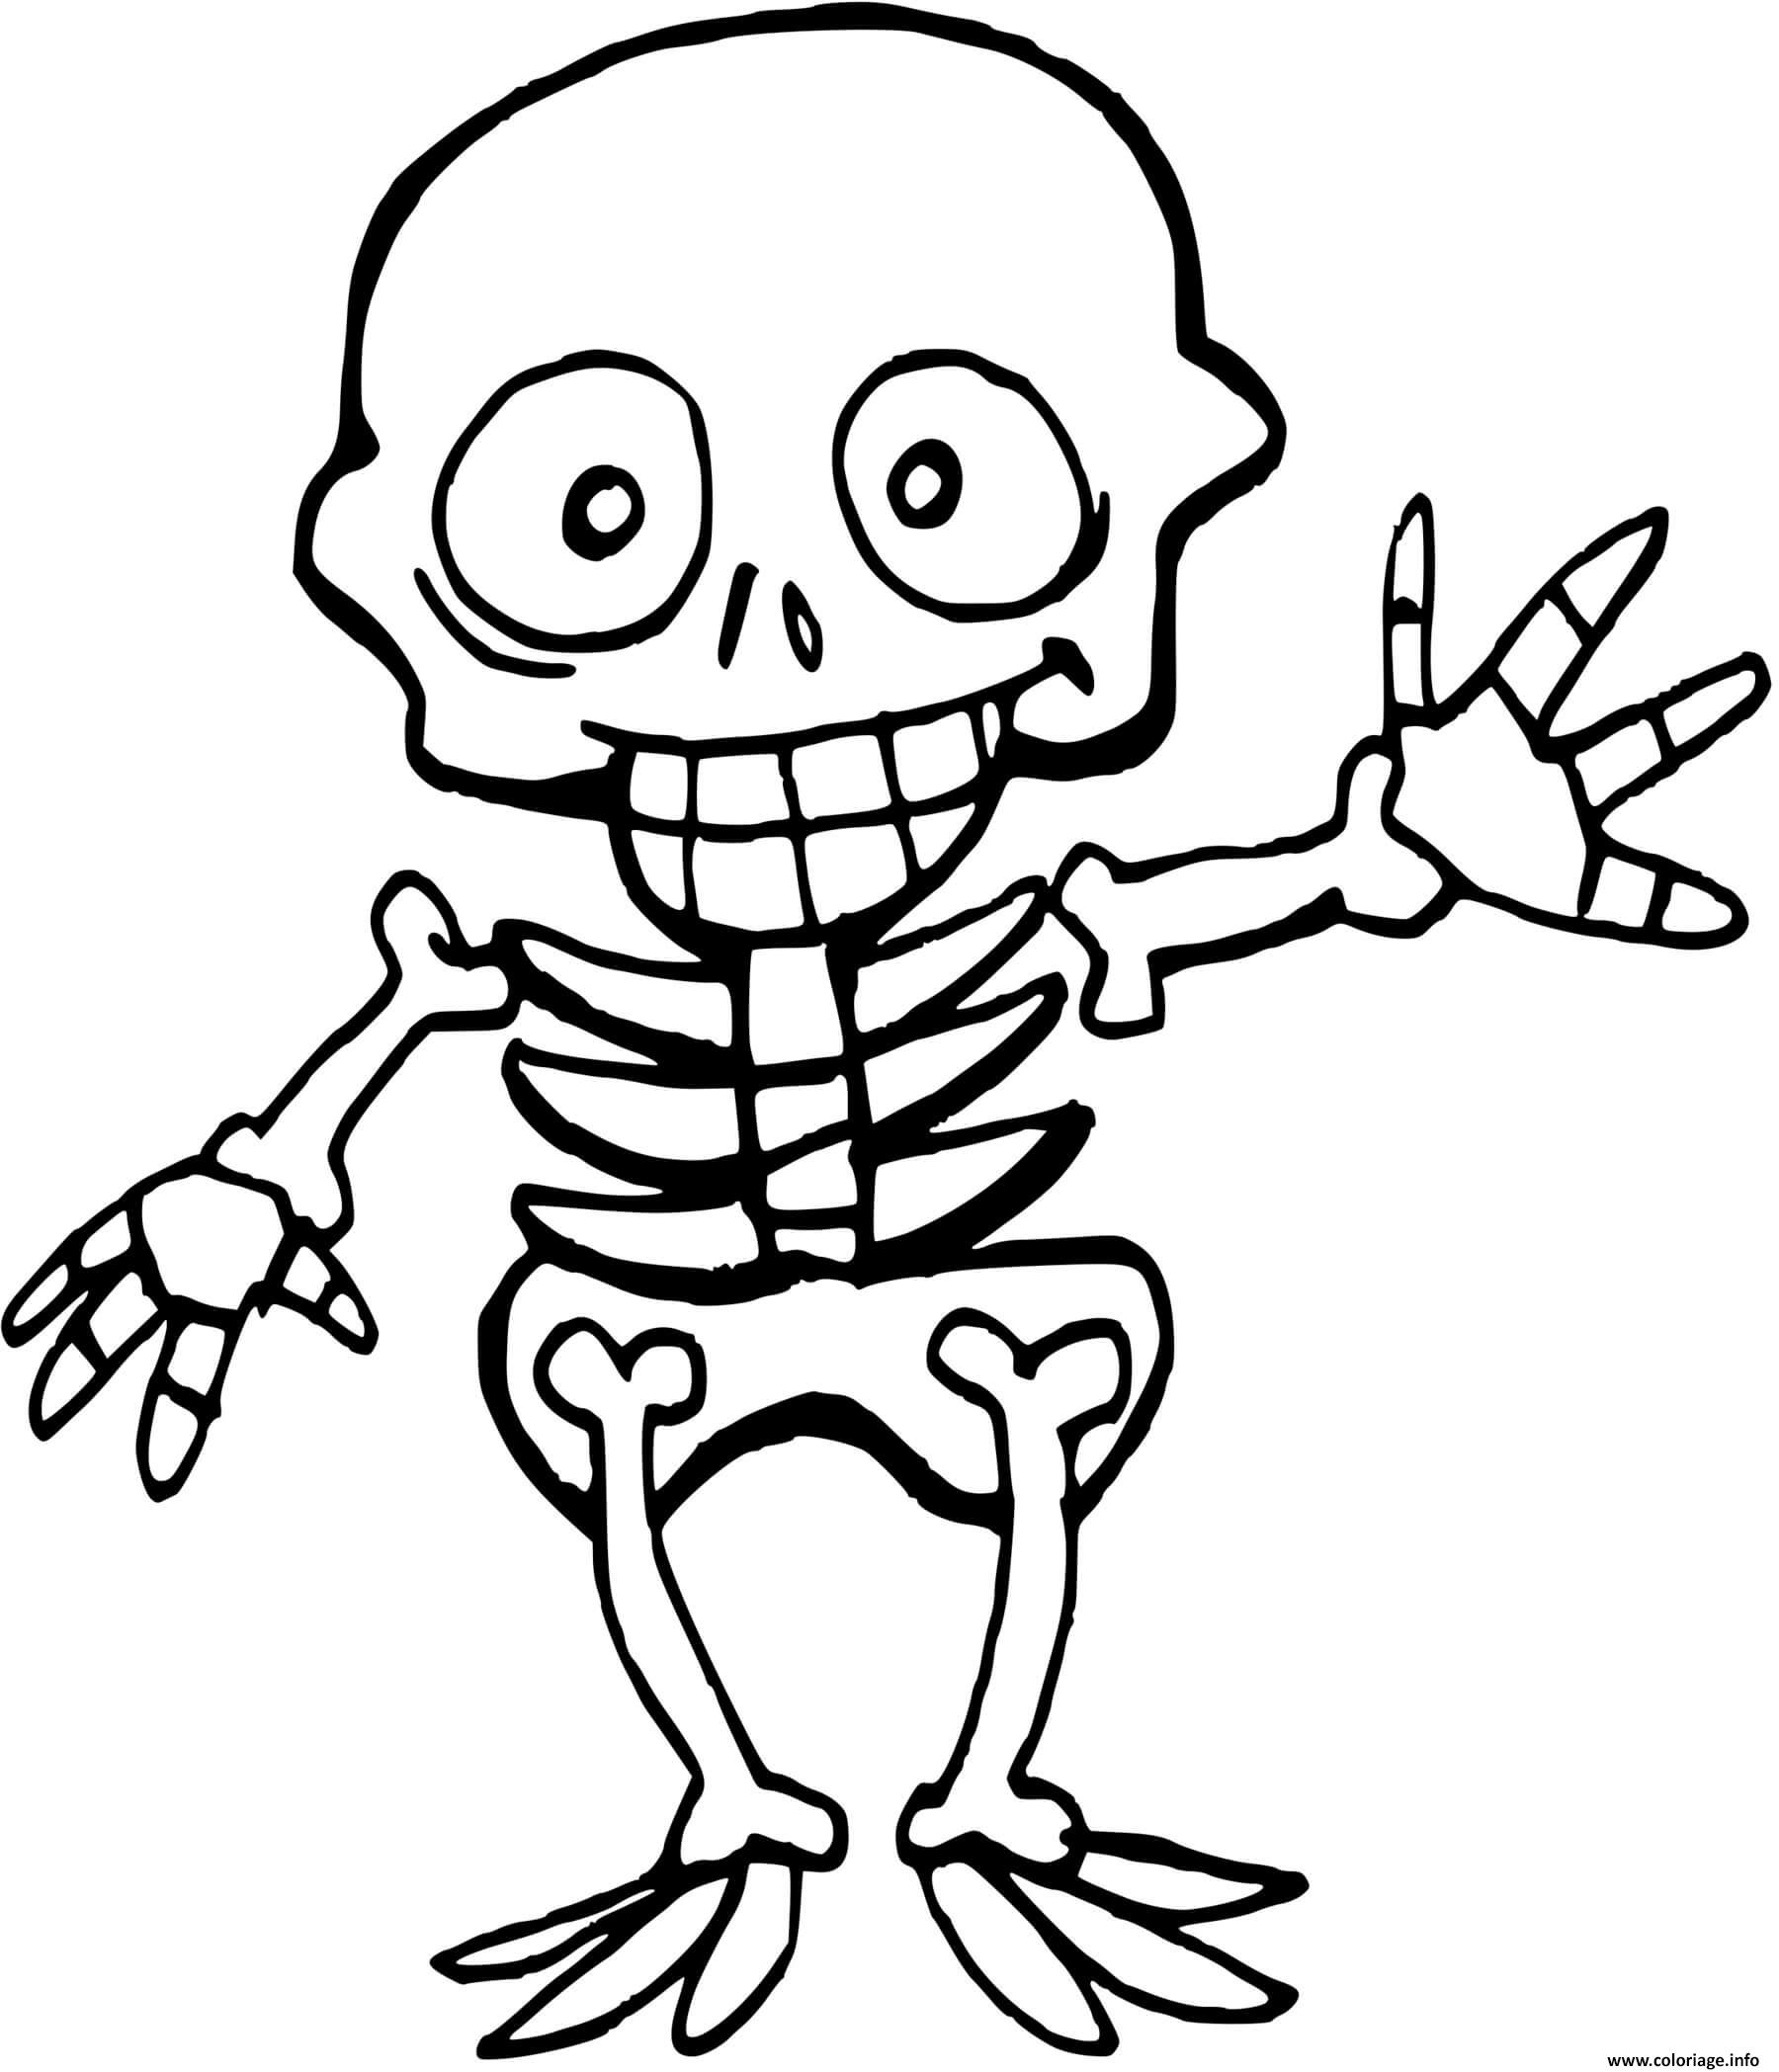 Dessin squelette enfant halloween Coloriage Gratuit à Imprimer